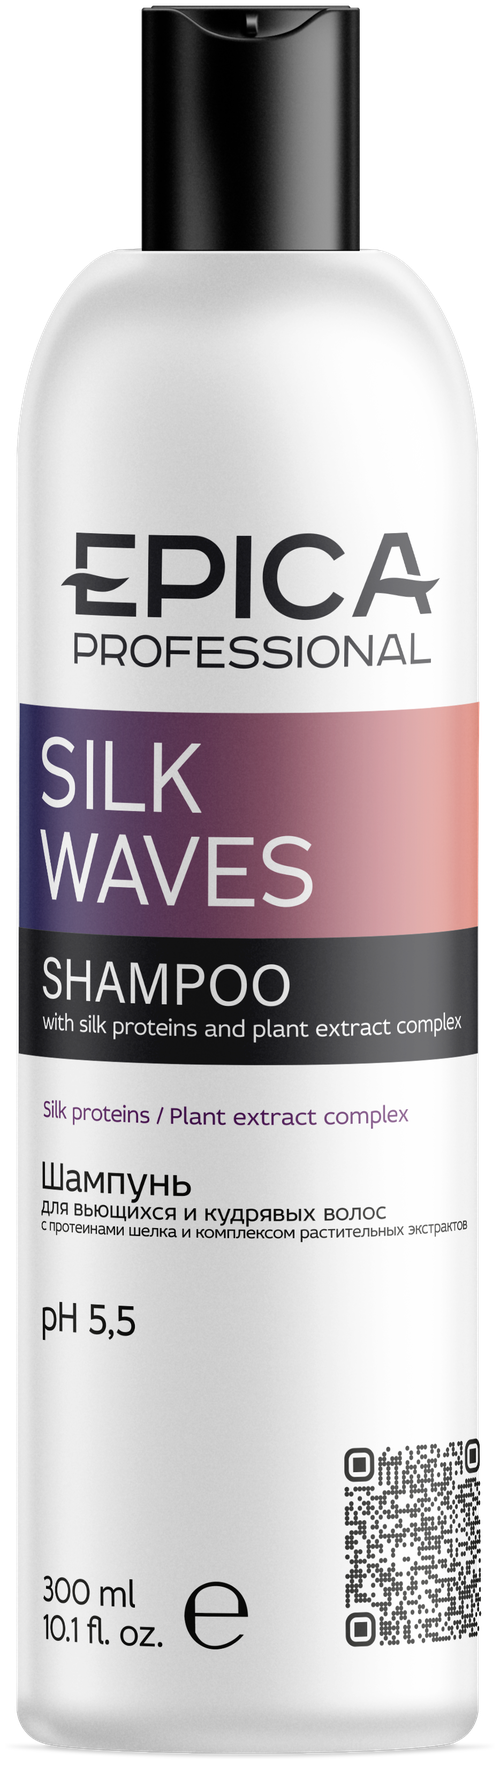 EPICA PROFESSIONAL Silk Waves Шампунь для вьющихся и кудрявых волос, 300 мл